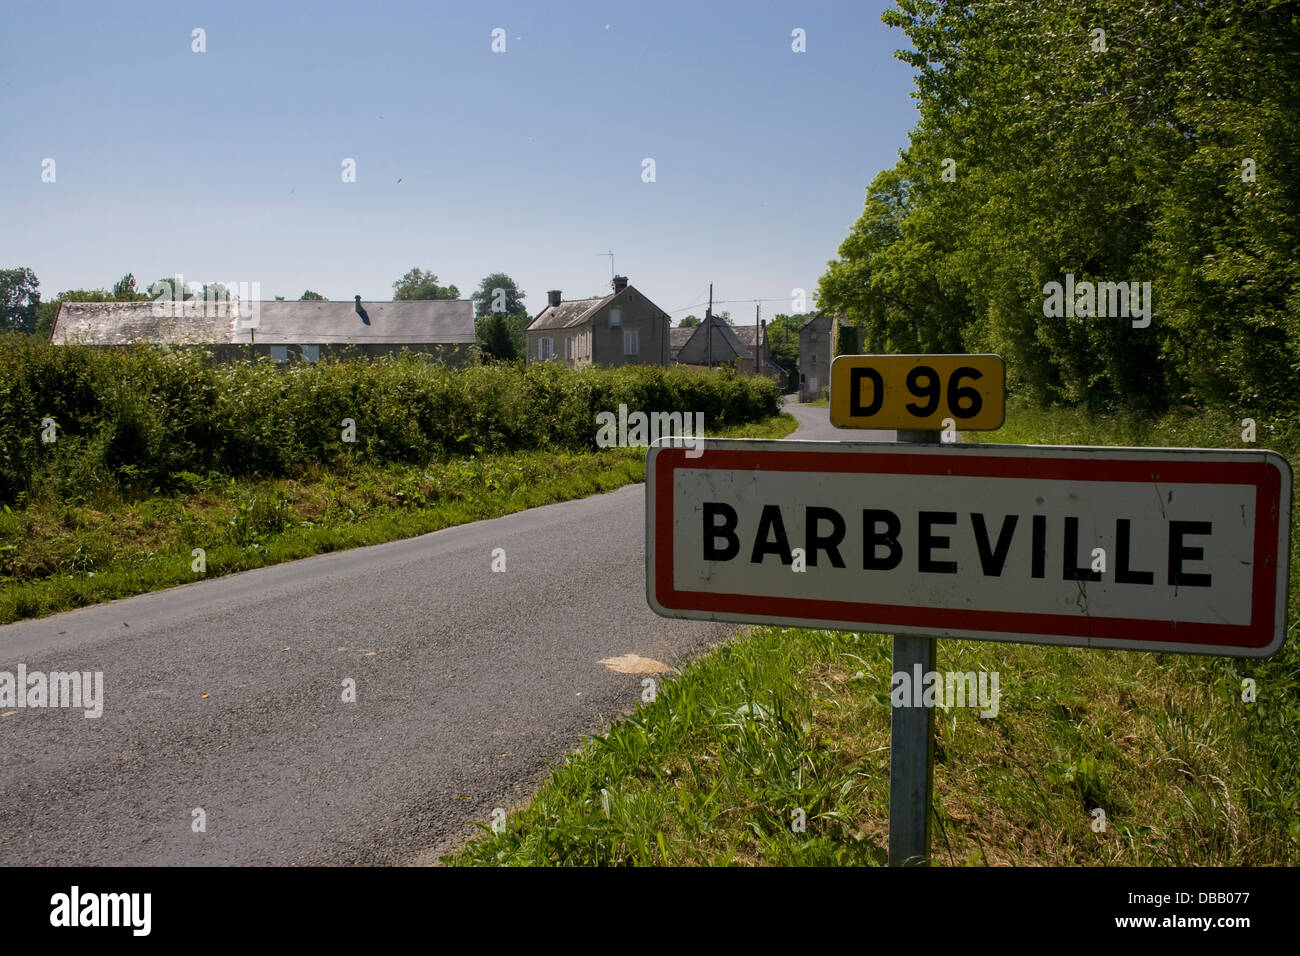 Barbeville:Ortsschild eine der Straße; am Straßenrand Ortstafel von "Barbeville" Stockfoto